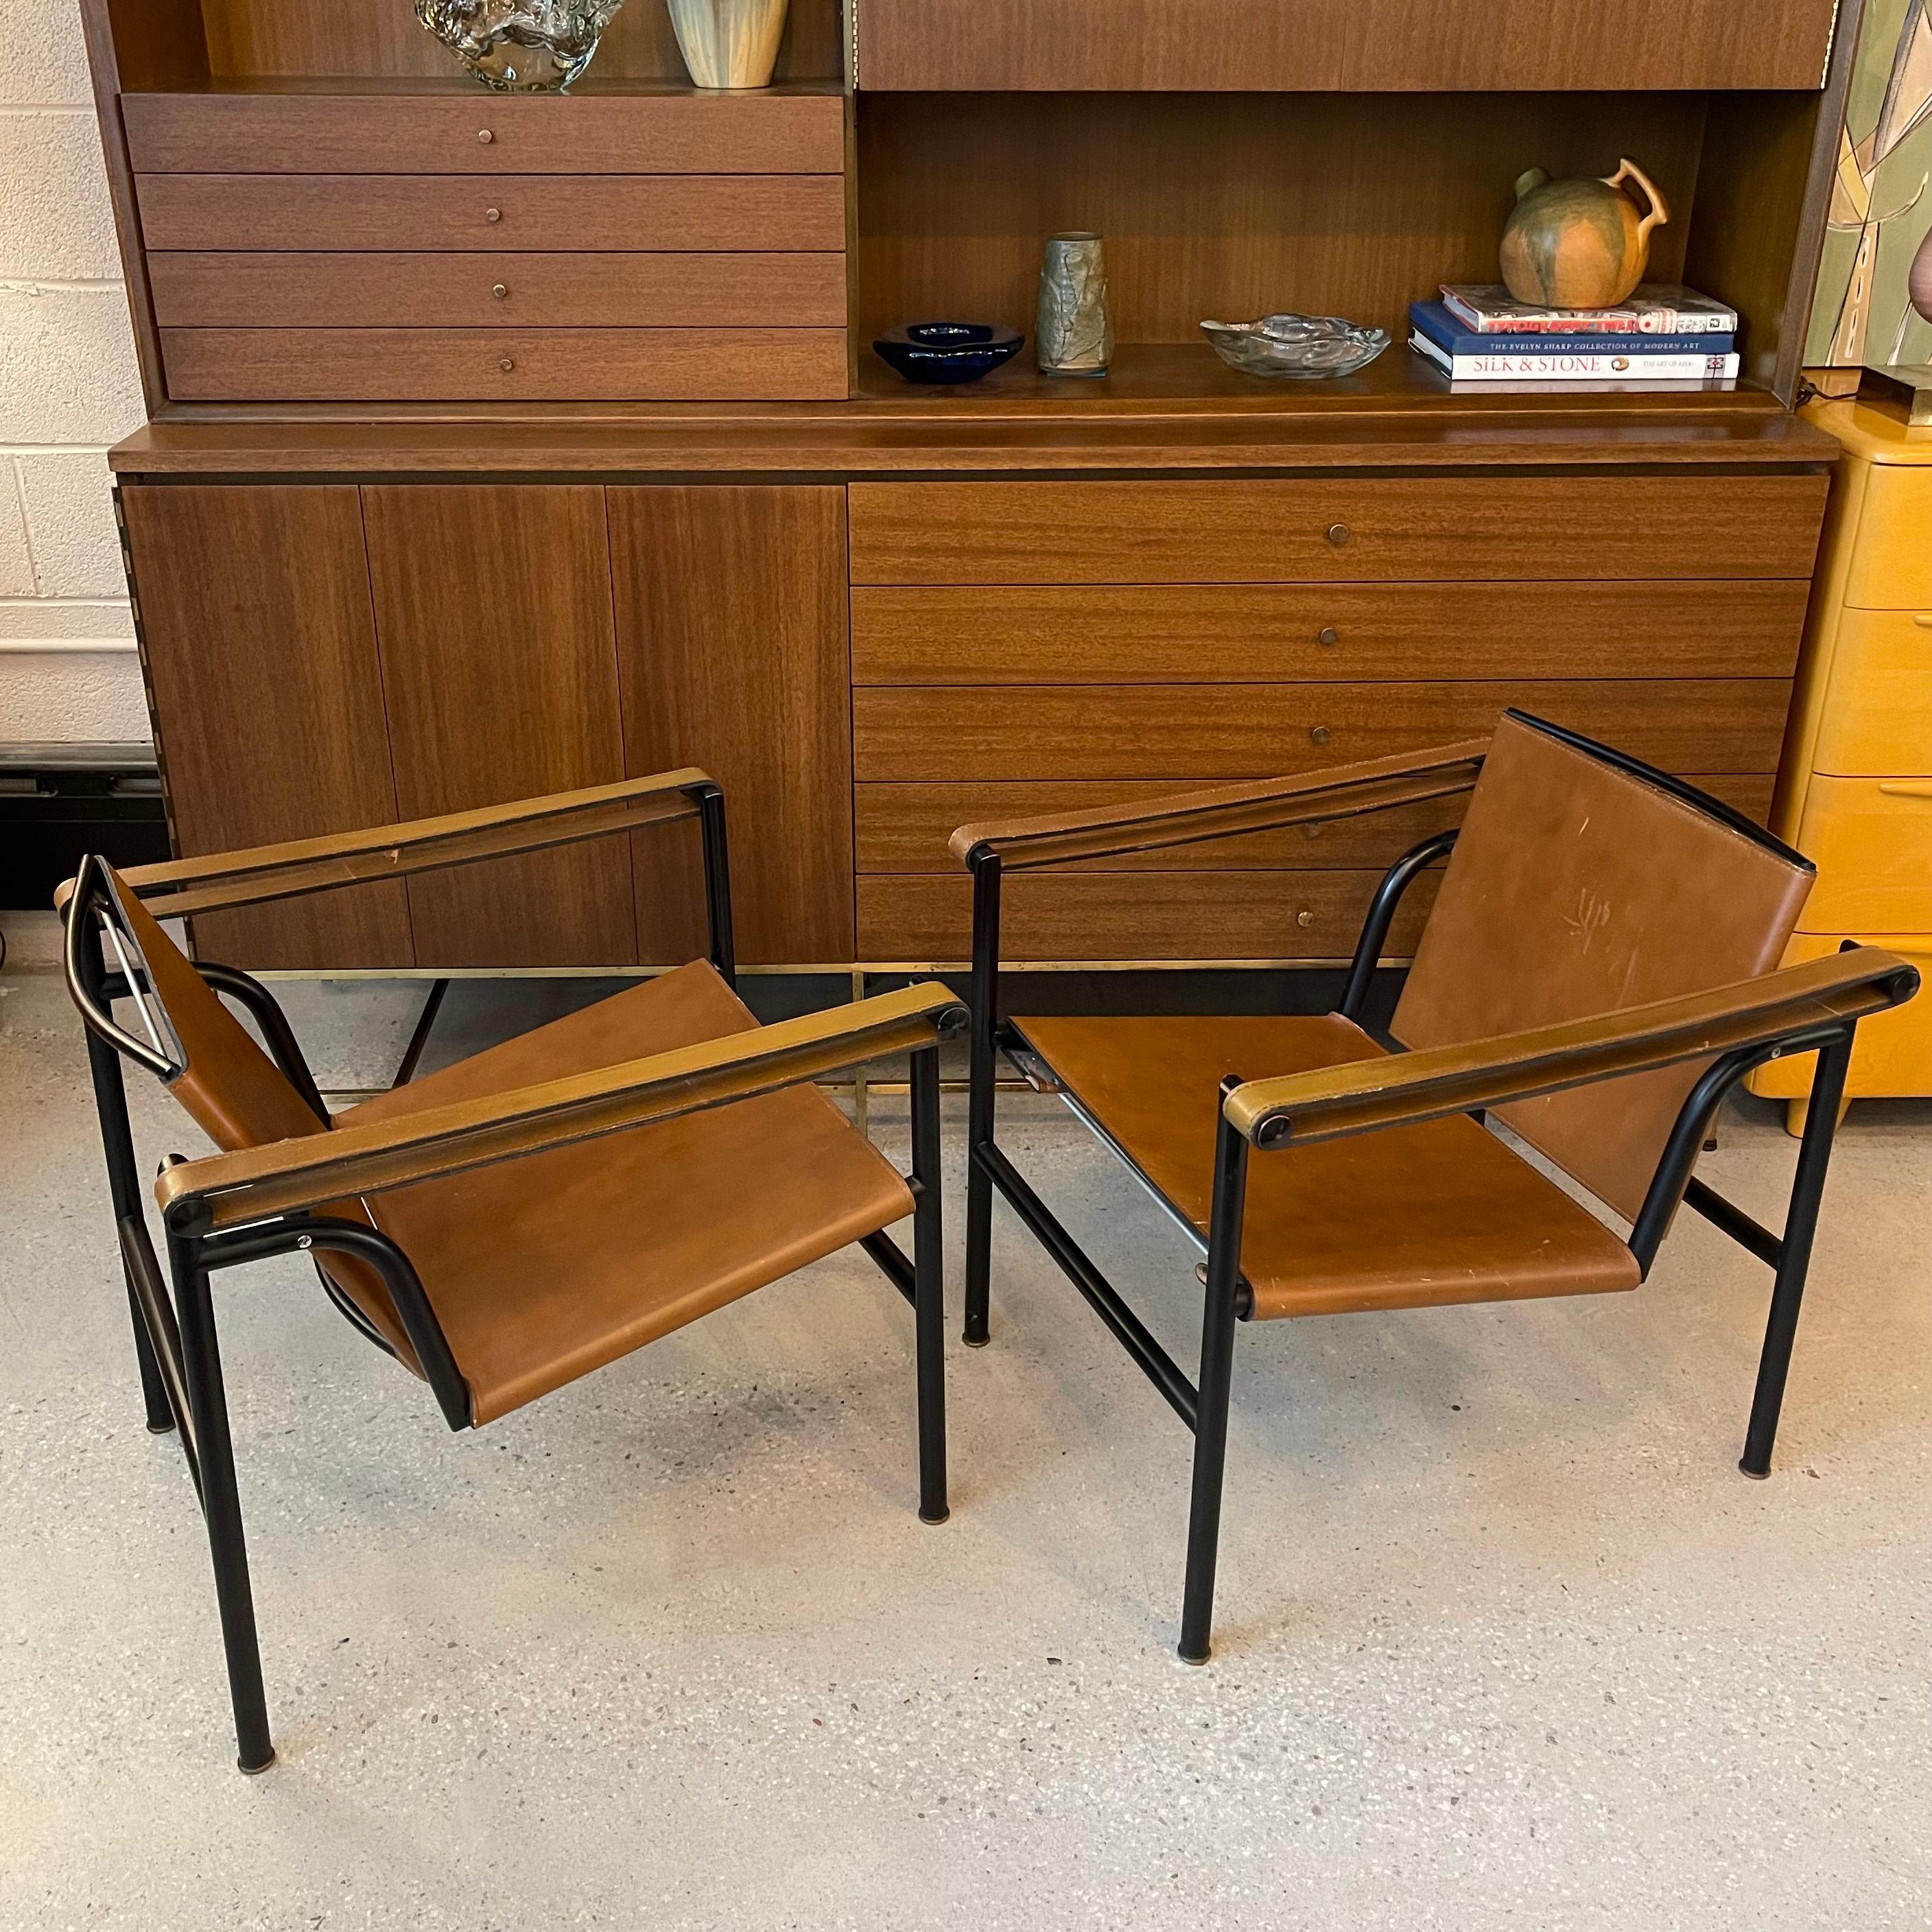 Zwei LC1, Basculant, Schlingensessel, 1928 von Le Corbusier, Pierre Jeanneret und Charlotte Perriand entworfen und in den 1970er Jahren von Cassina, Italien, hergestellt. Diese ikonischen Bauhaus-Stühle zeichnen sich durch niedrige, schlanke,